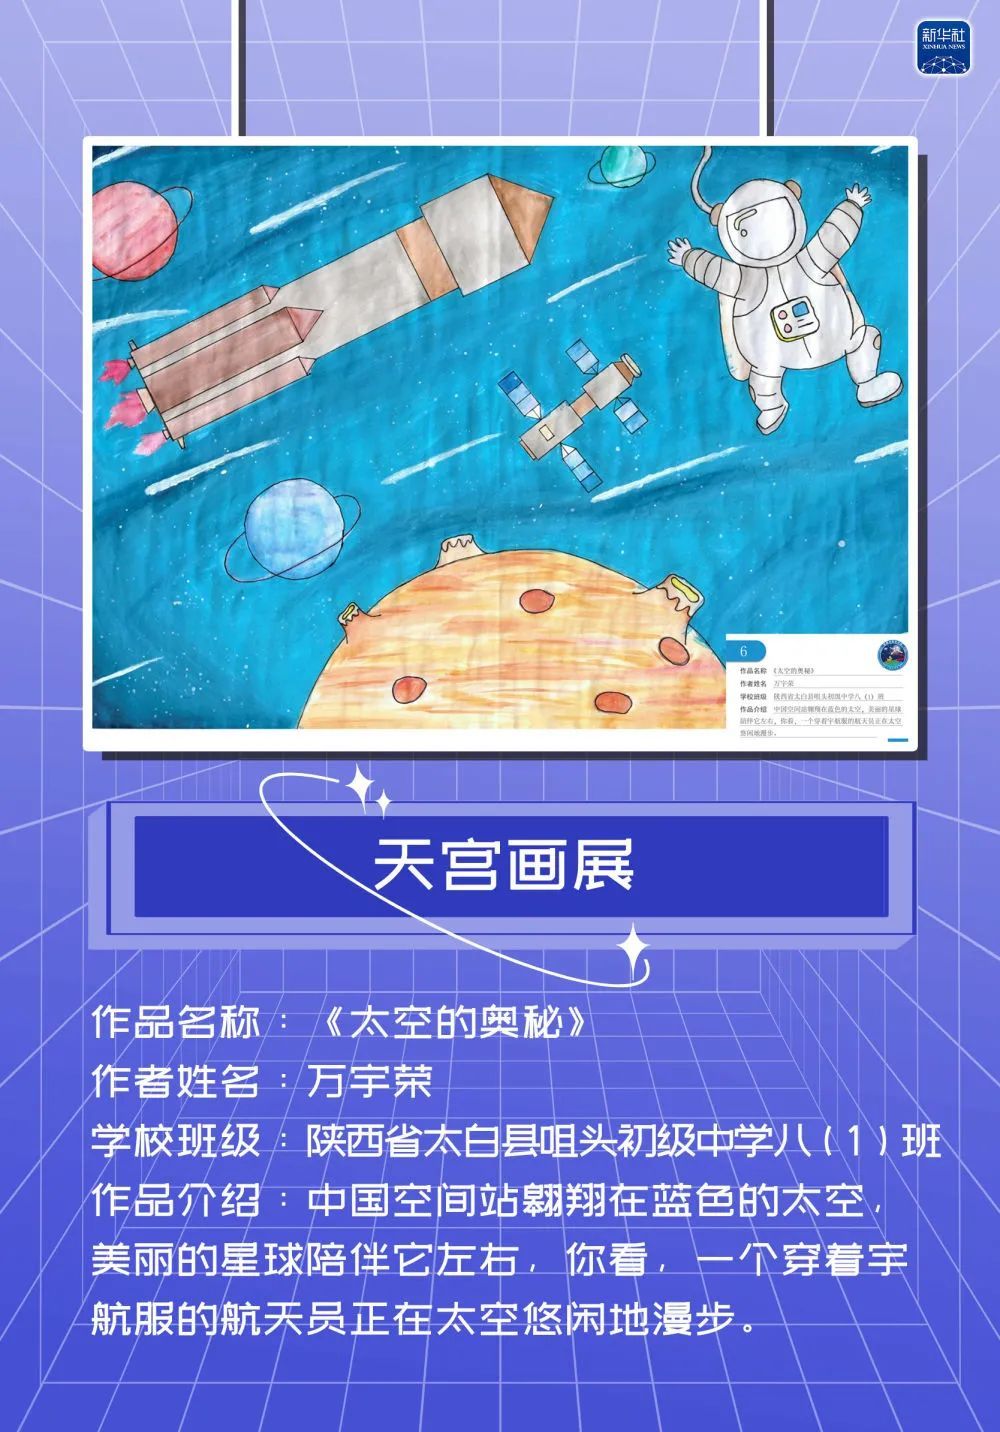 太空画上太空一起去逛中国空间站天宫画展